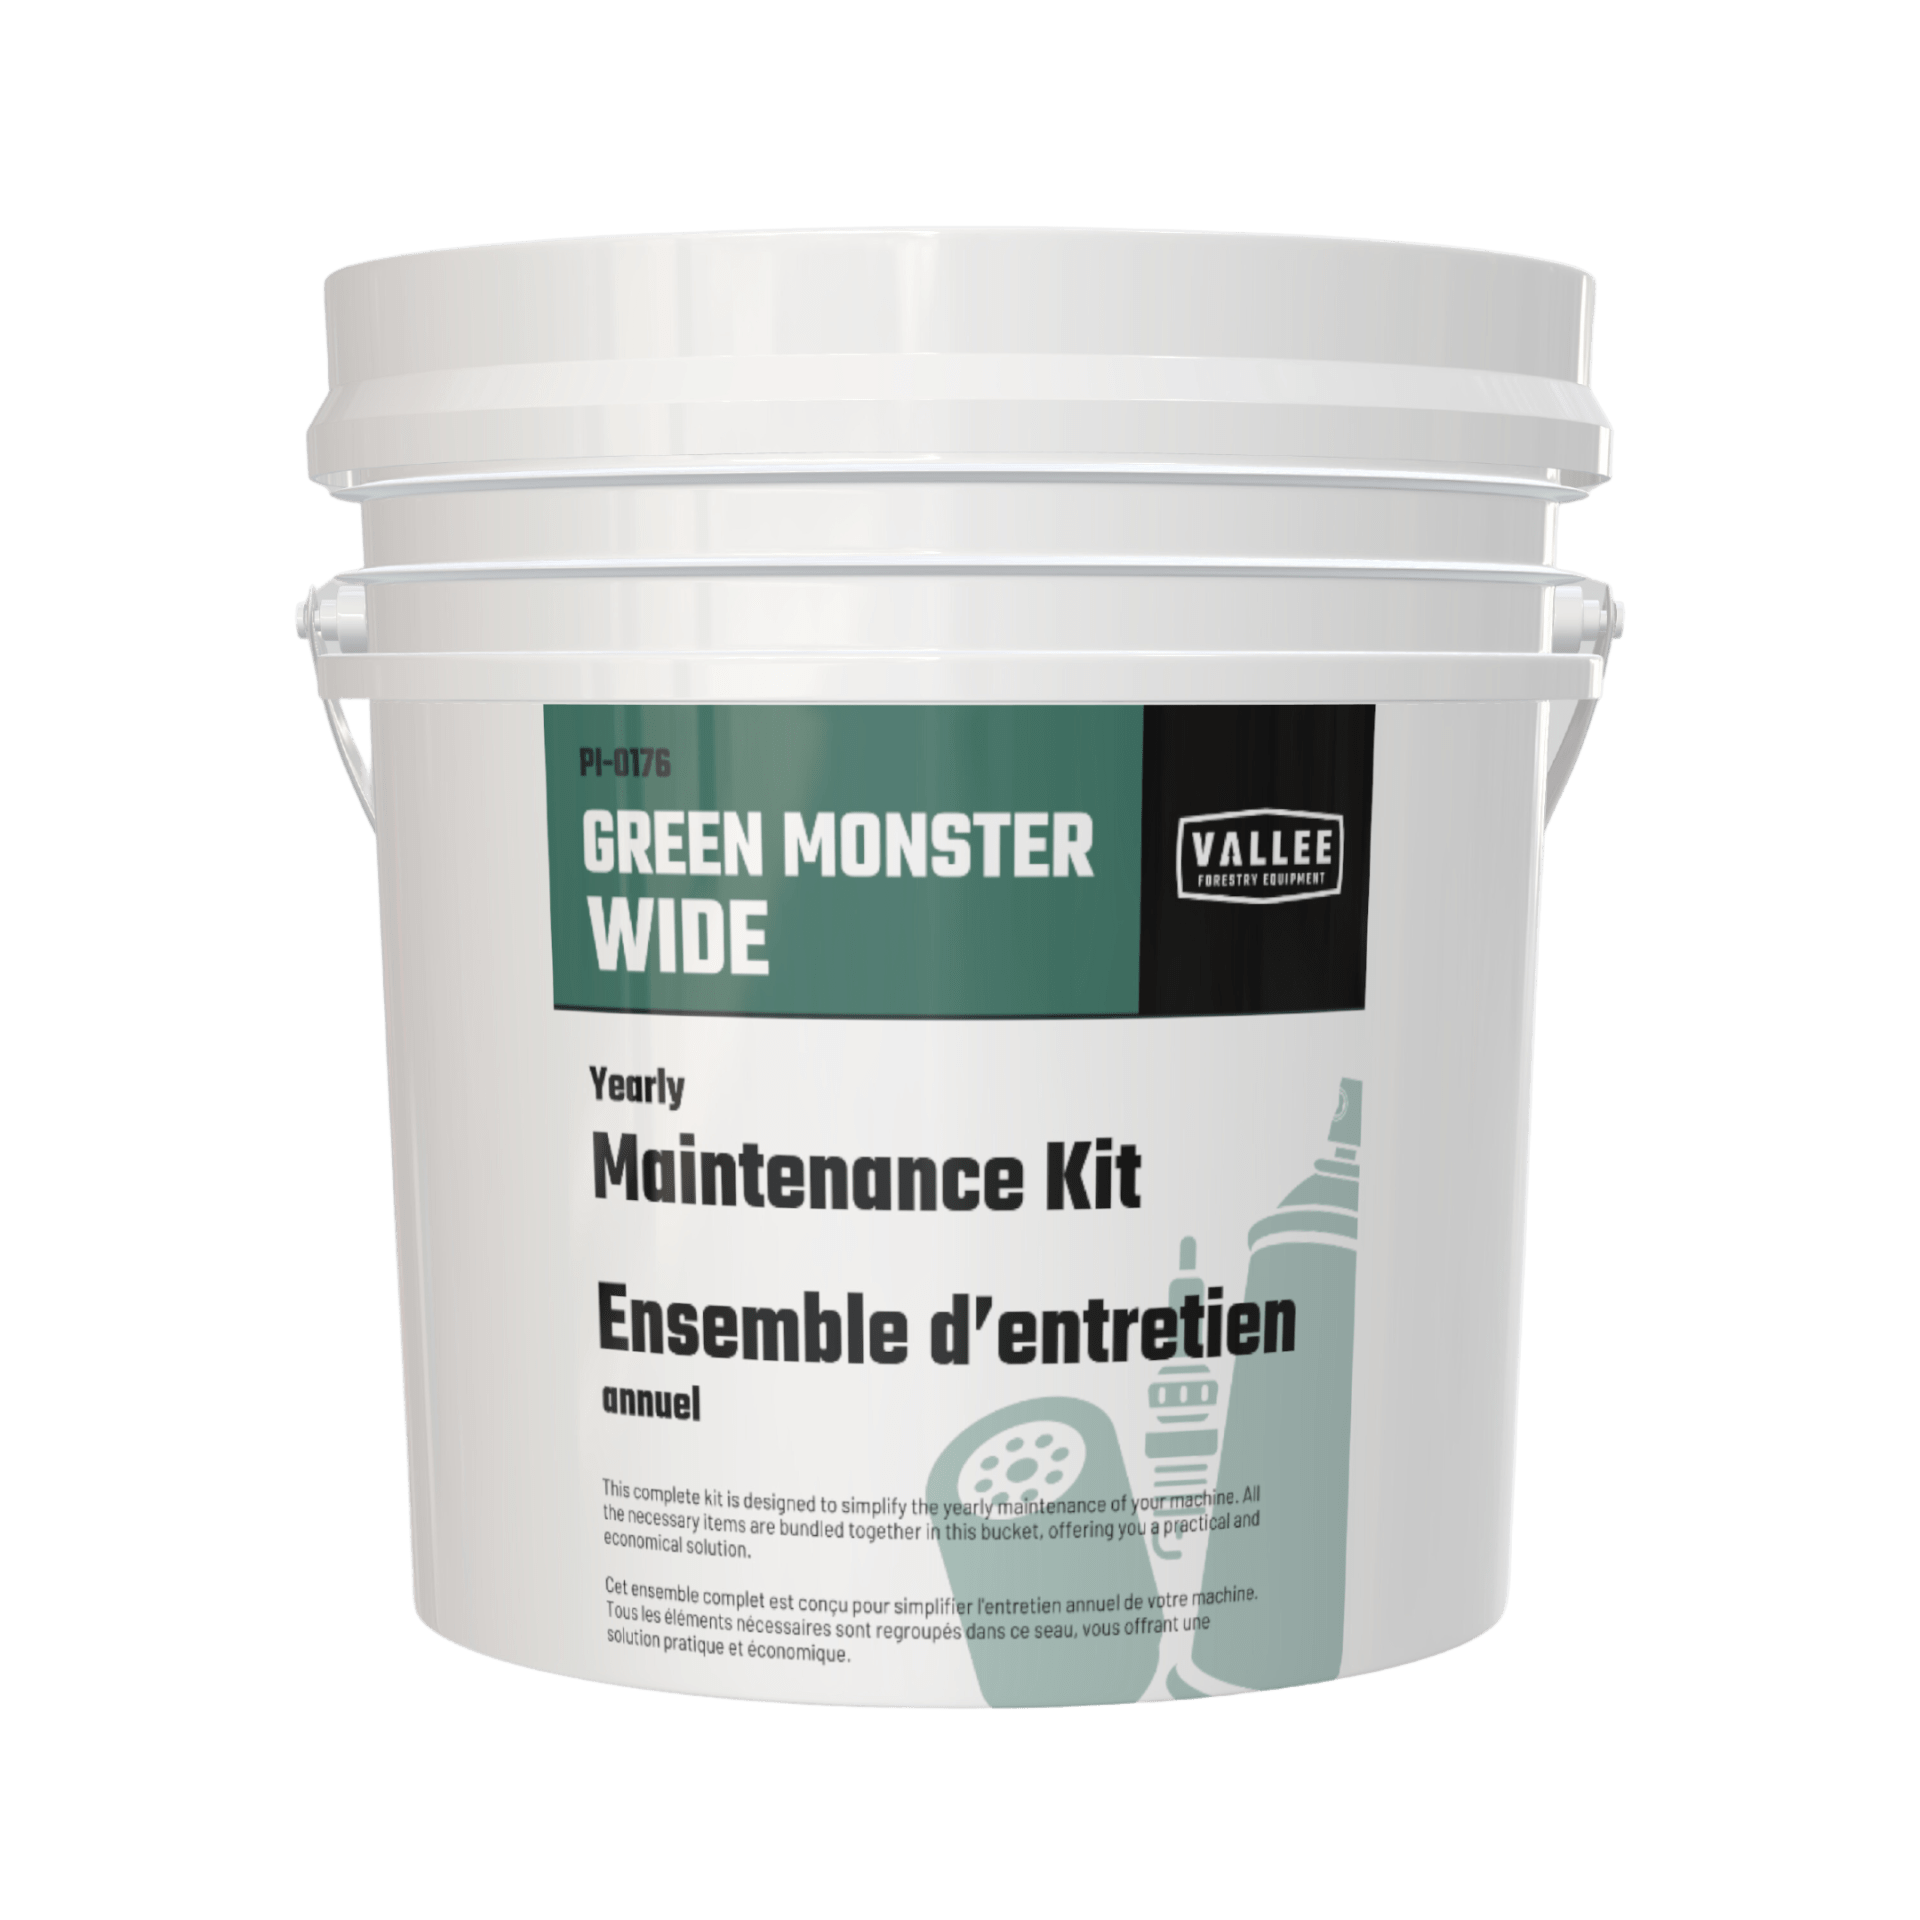 Maintenance Kit for Green Monster Wide